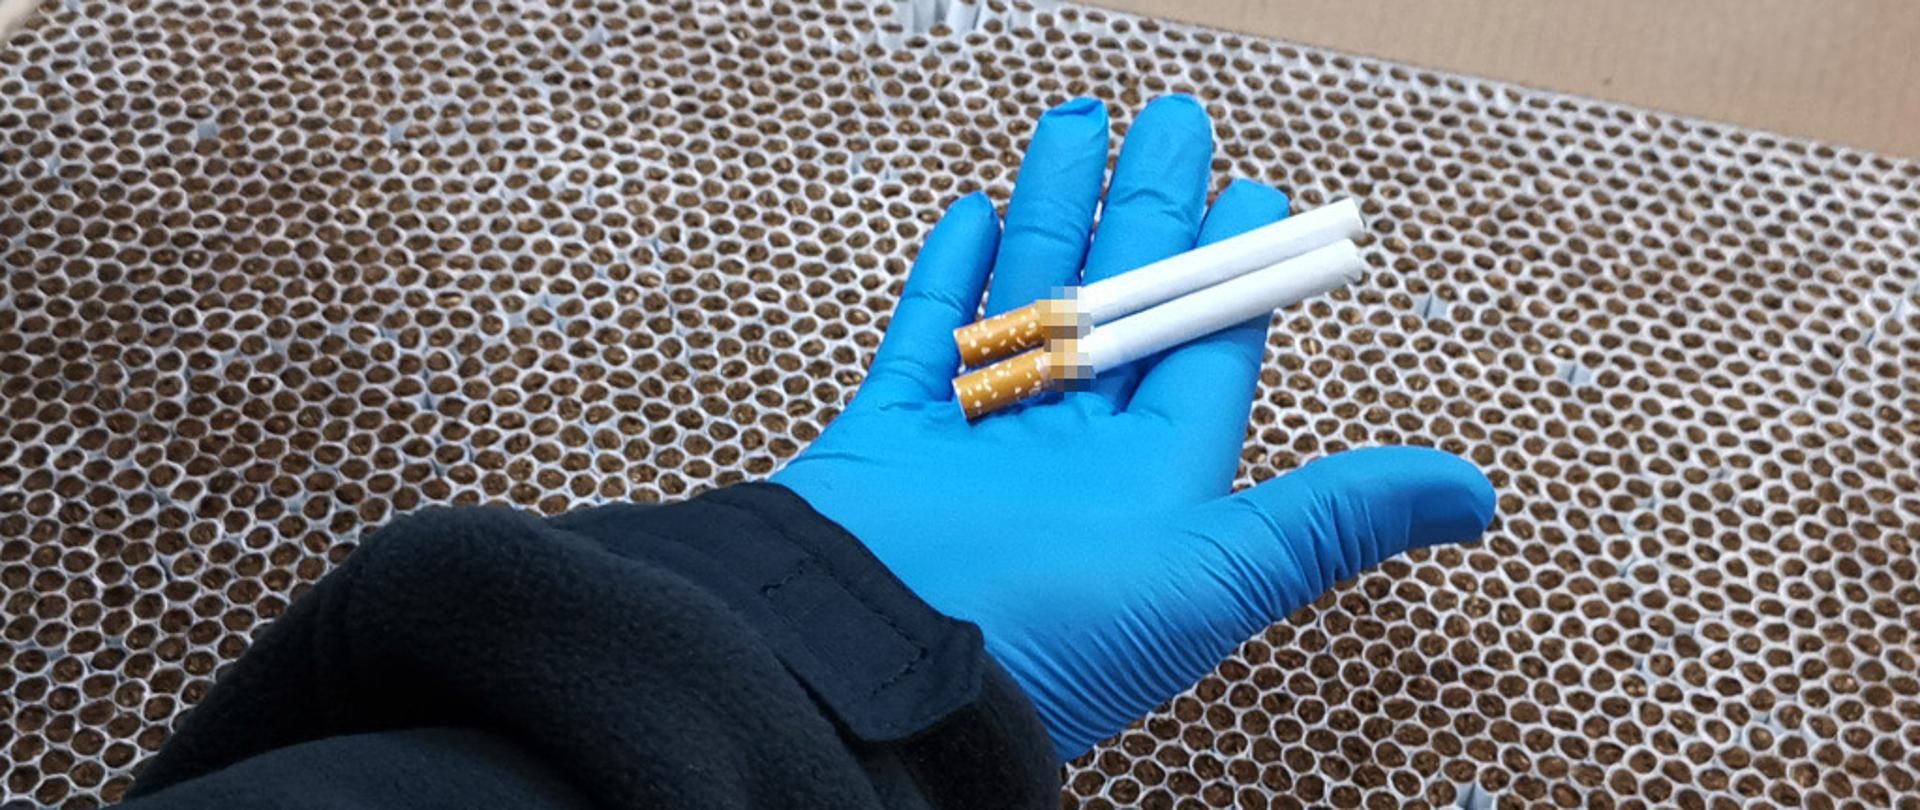 Dwa papierosy na dłoni w rękawiczce, poniżej karton z papierosami.